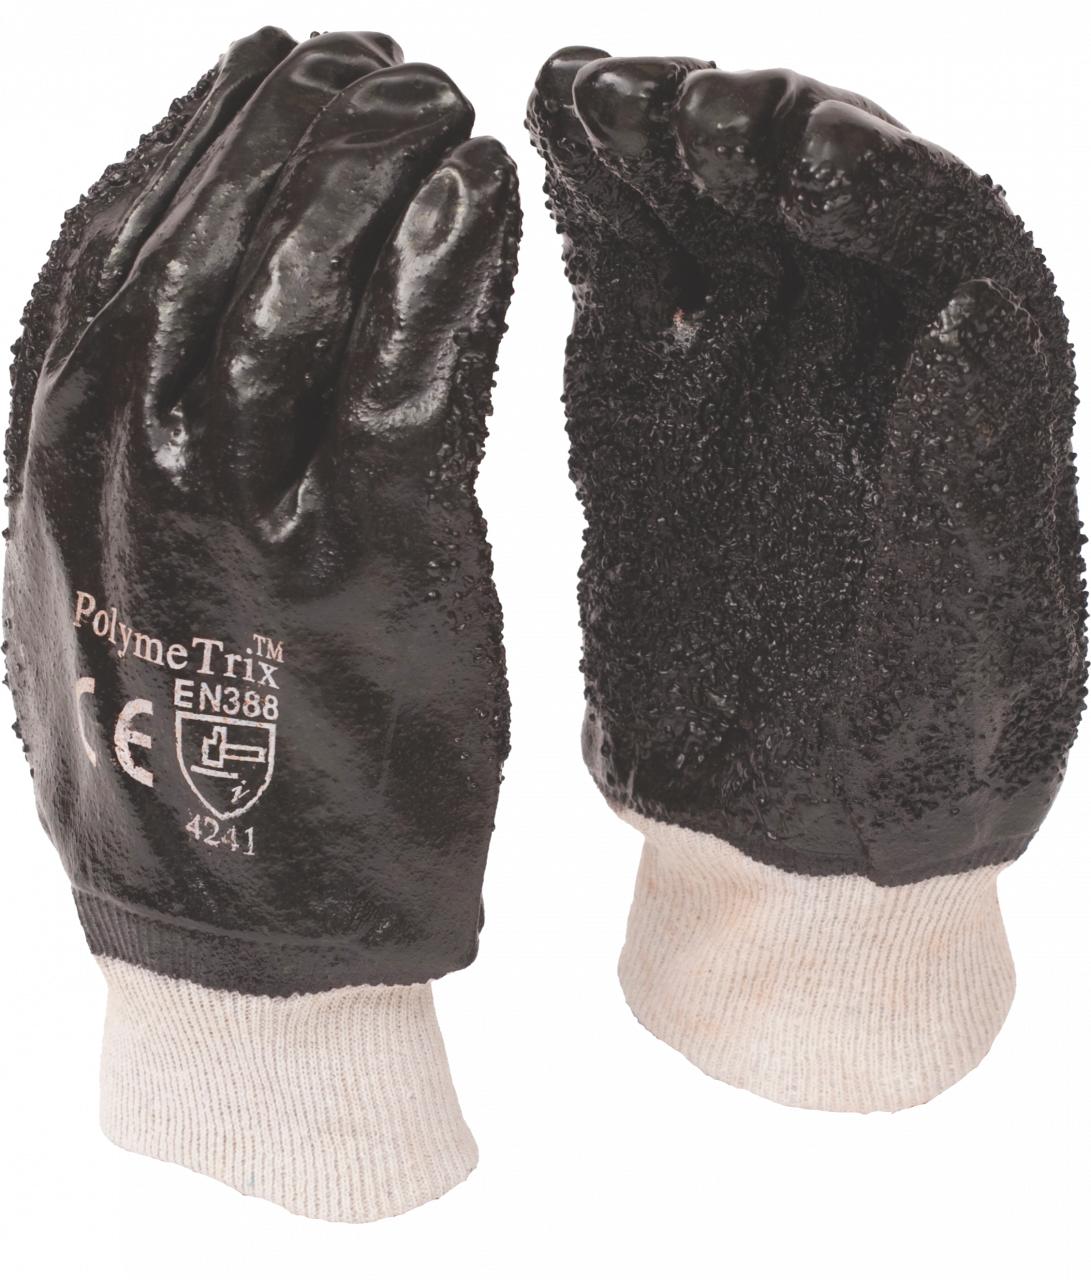 Glove Pvc Chip Palm Knit Wrist Black